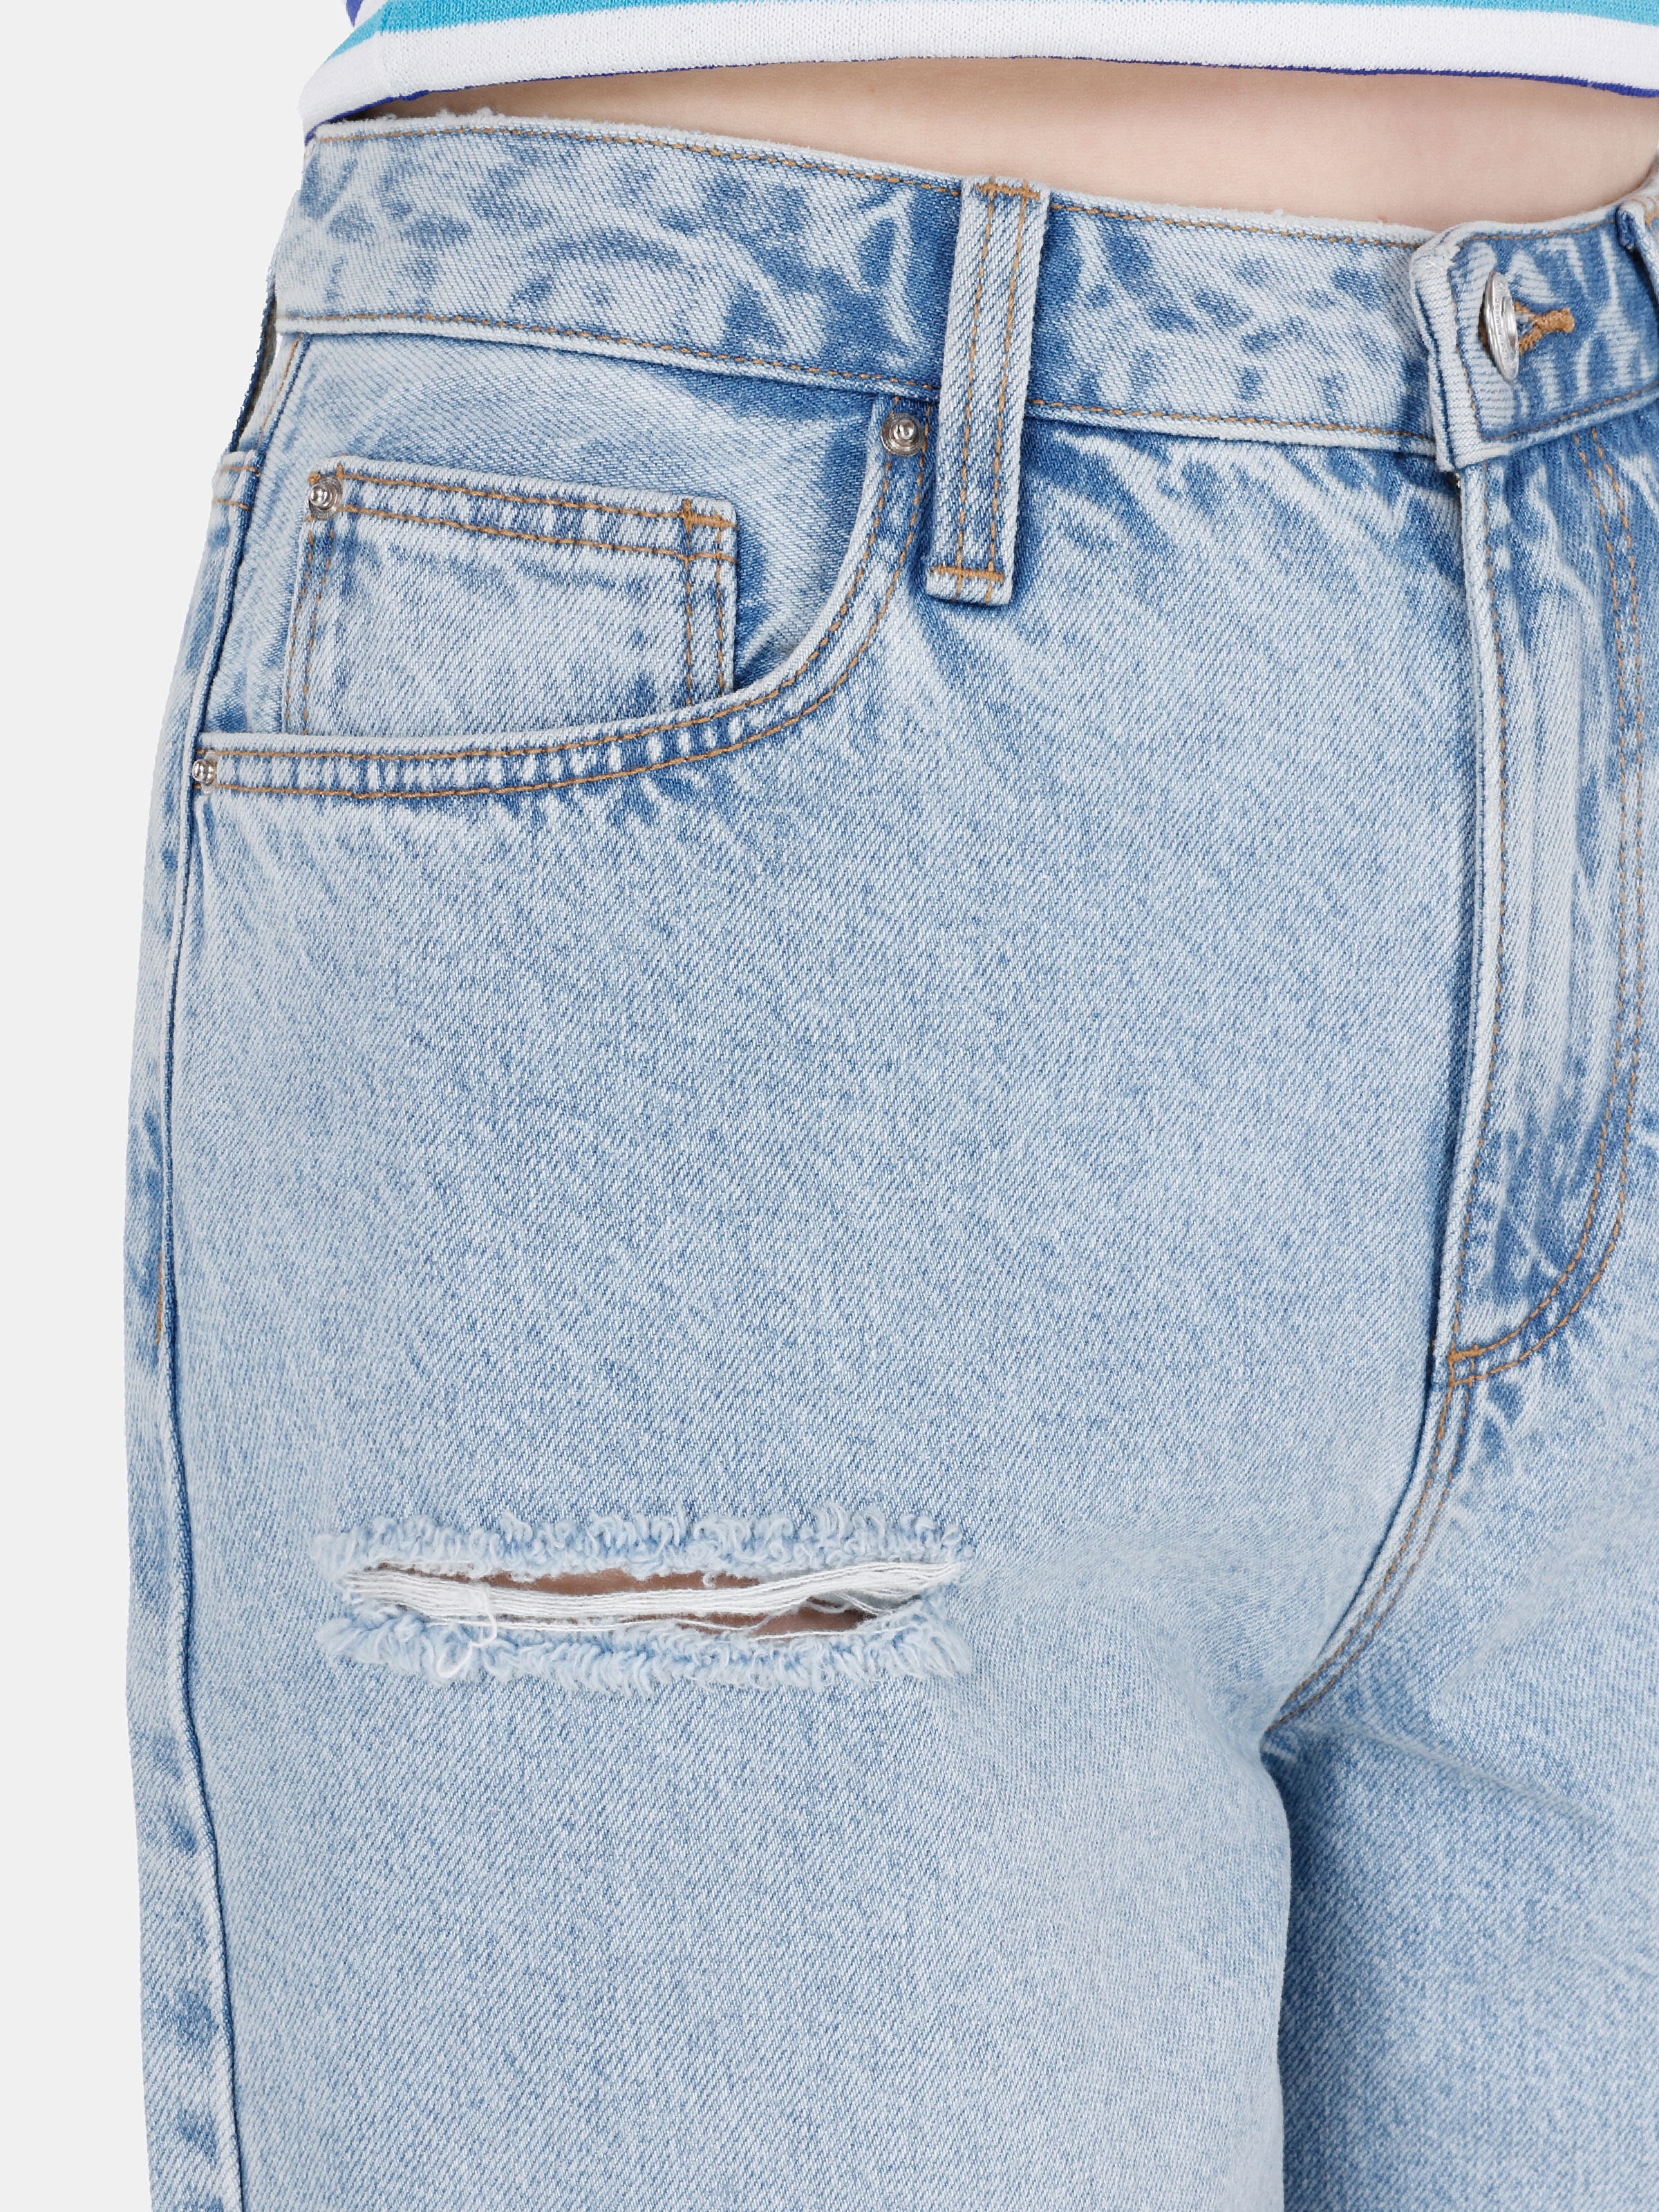 Afișați detalii pentru Short / Pantaloni Scurti De Dama Albastru Regular Fit  CL1068615